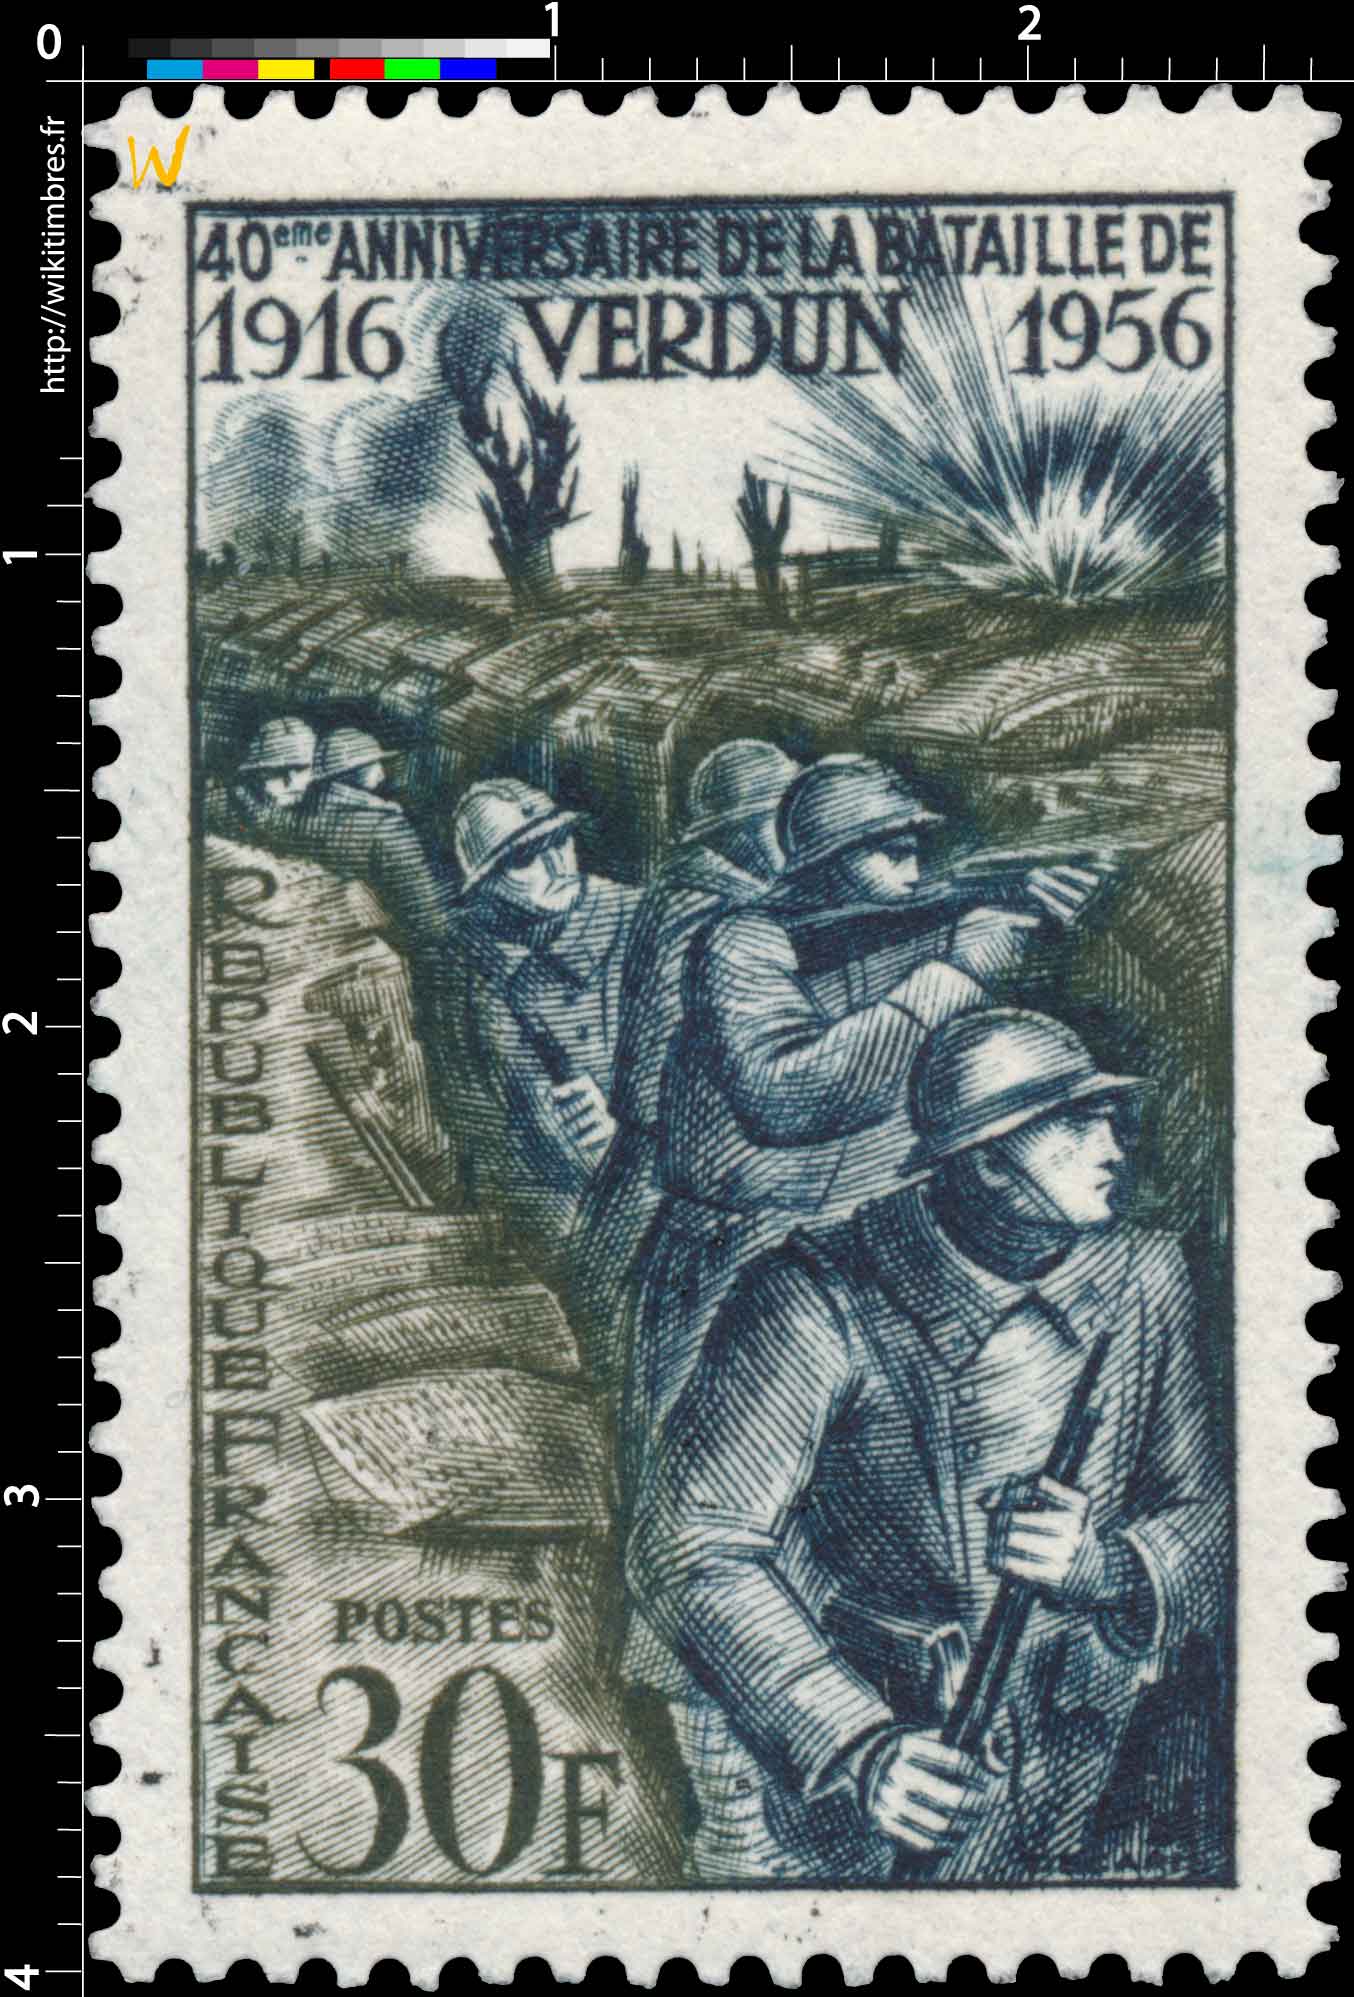 40e ANNIVERSAIRE DE LA BATAILLE DE VERDUN 1916-1956